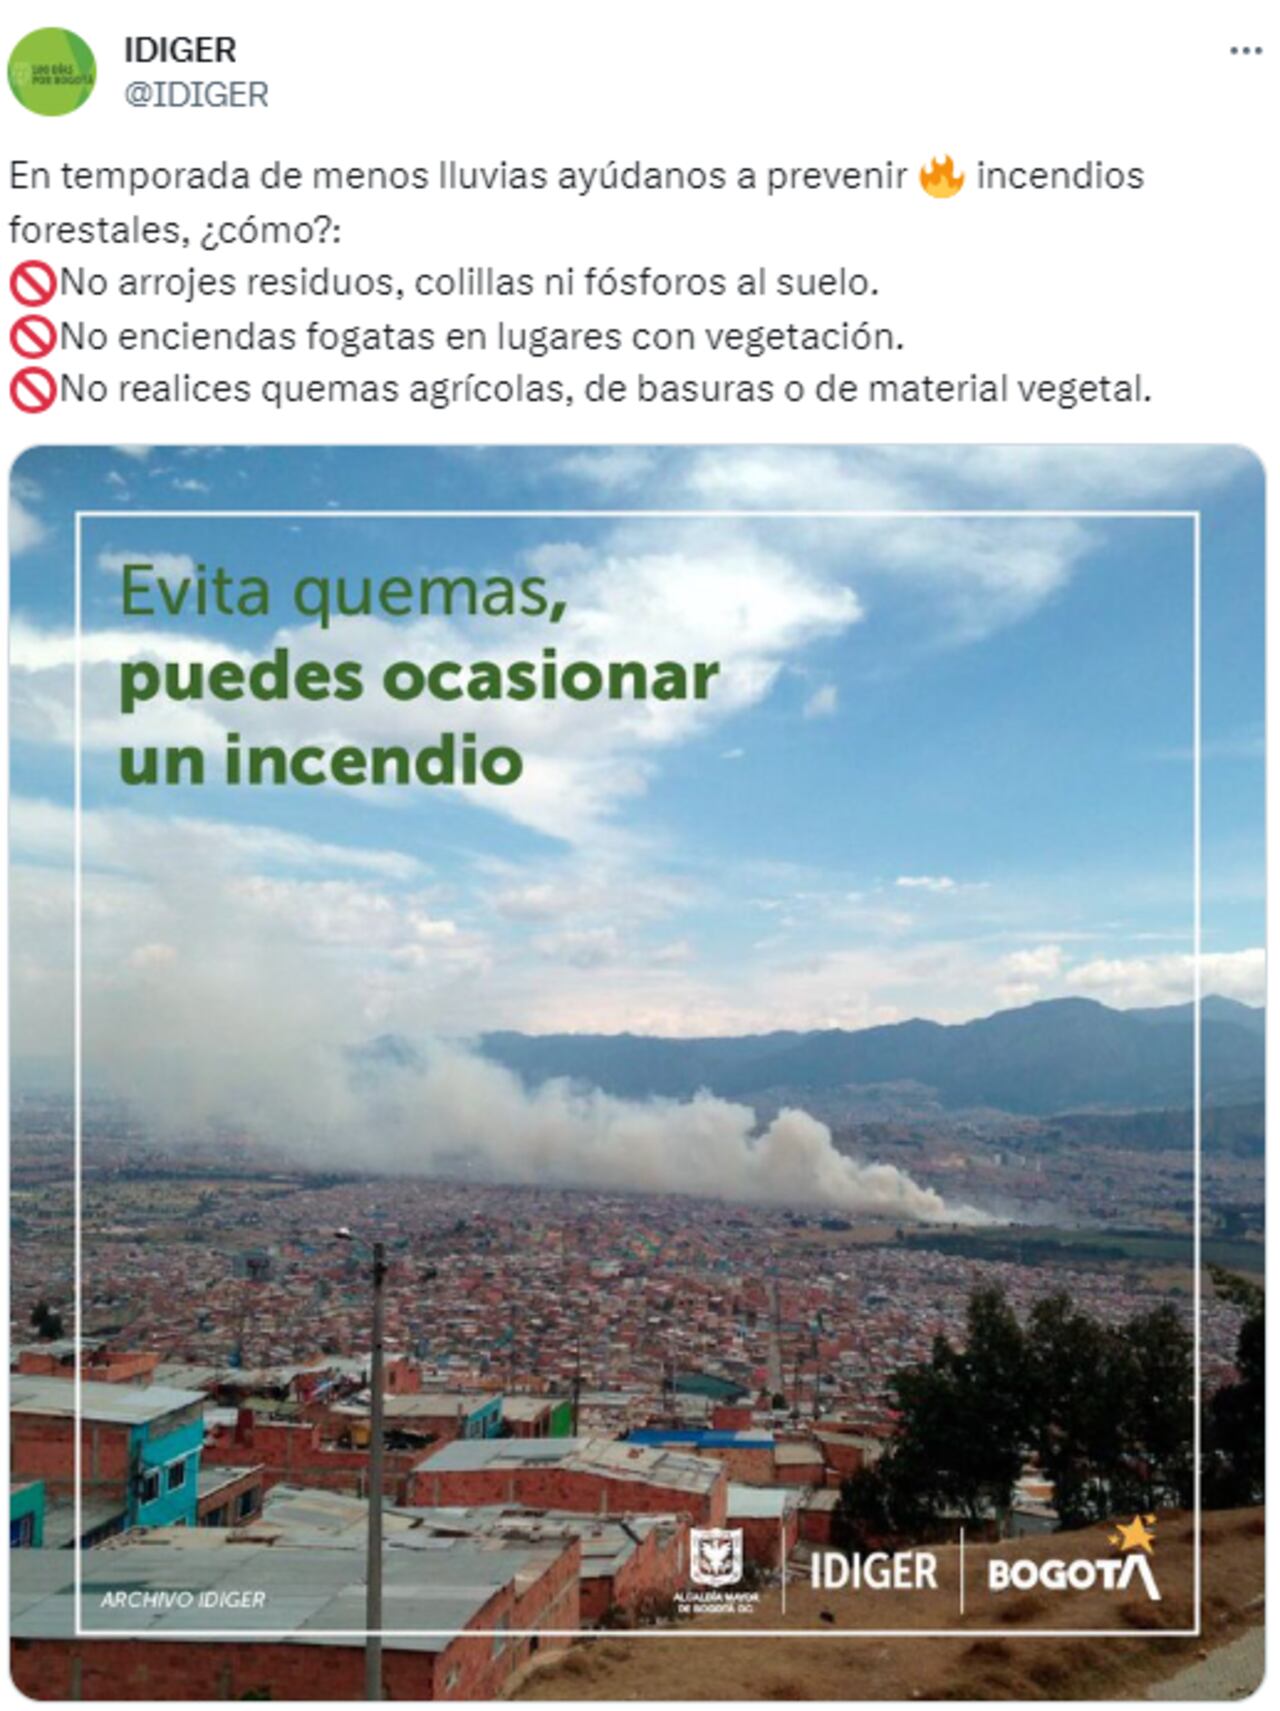 Idiger hace un llamado para evitar incendios por altas temperaturas en Bogotá